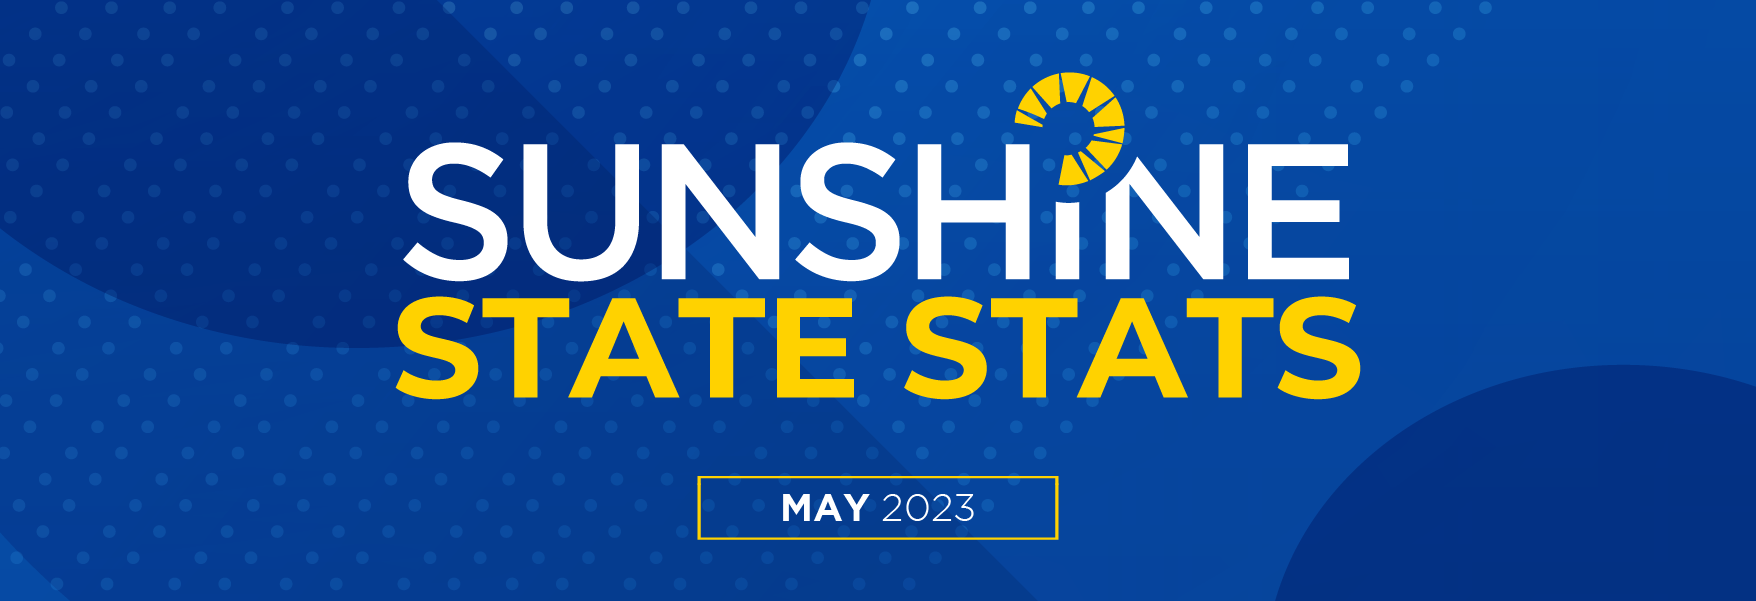 May 2023 Sunshine State Stats